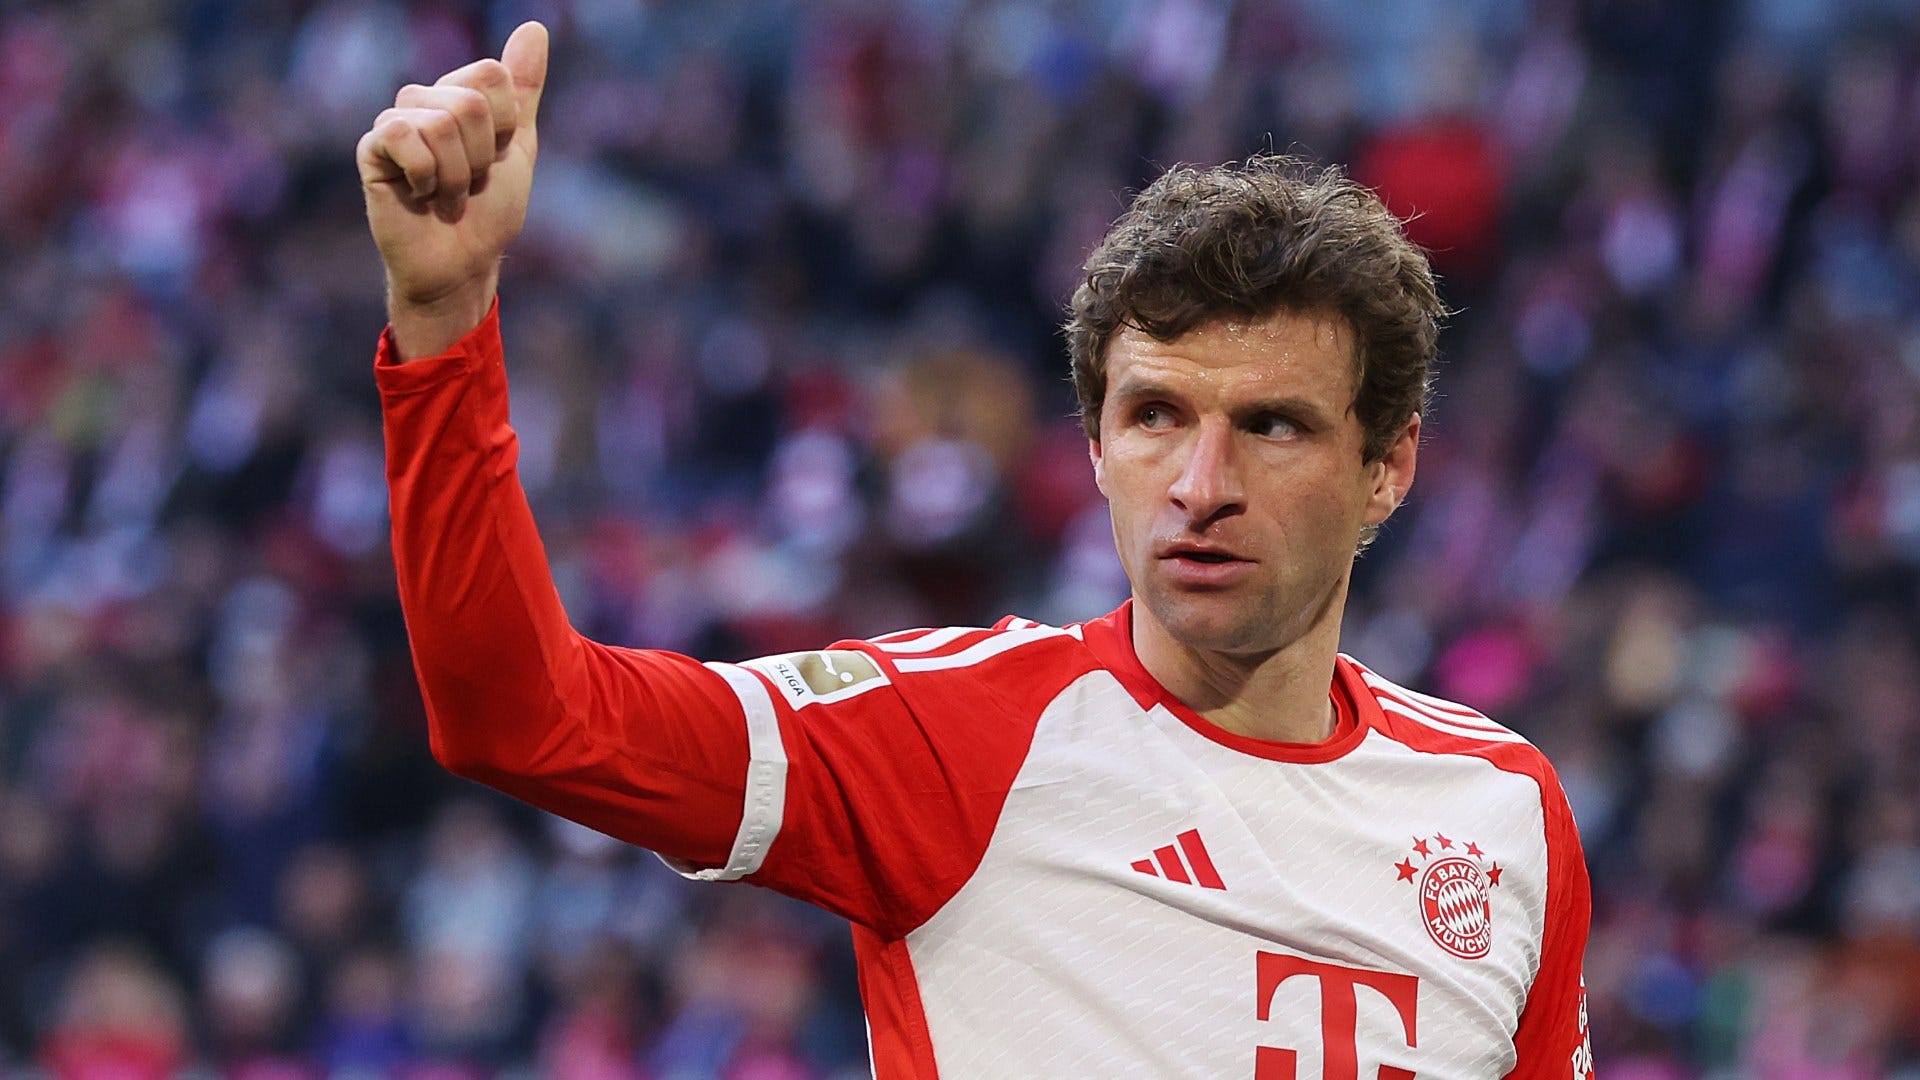 "Schon beeindruckend": Ein Stadion hat bei Thomas Müller vom FC Bayern besonderen Eindruck hinterlassen